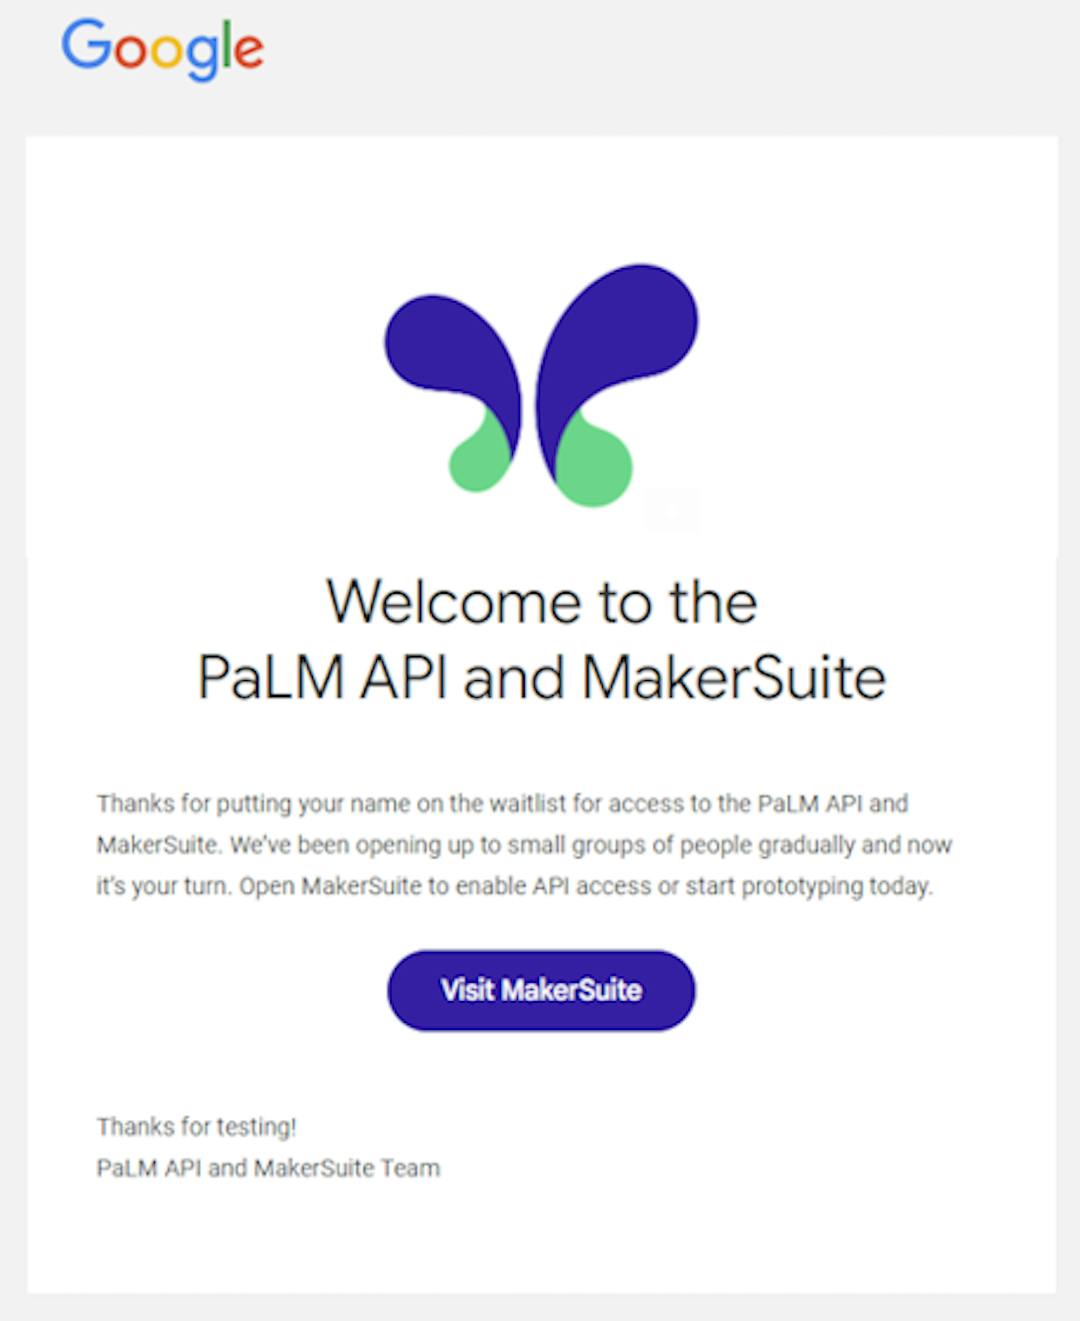 E-mail de boas-vindas do Google sobre acesso à API PaLM e ao MakerSuite